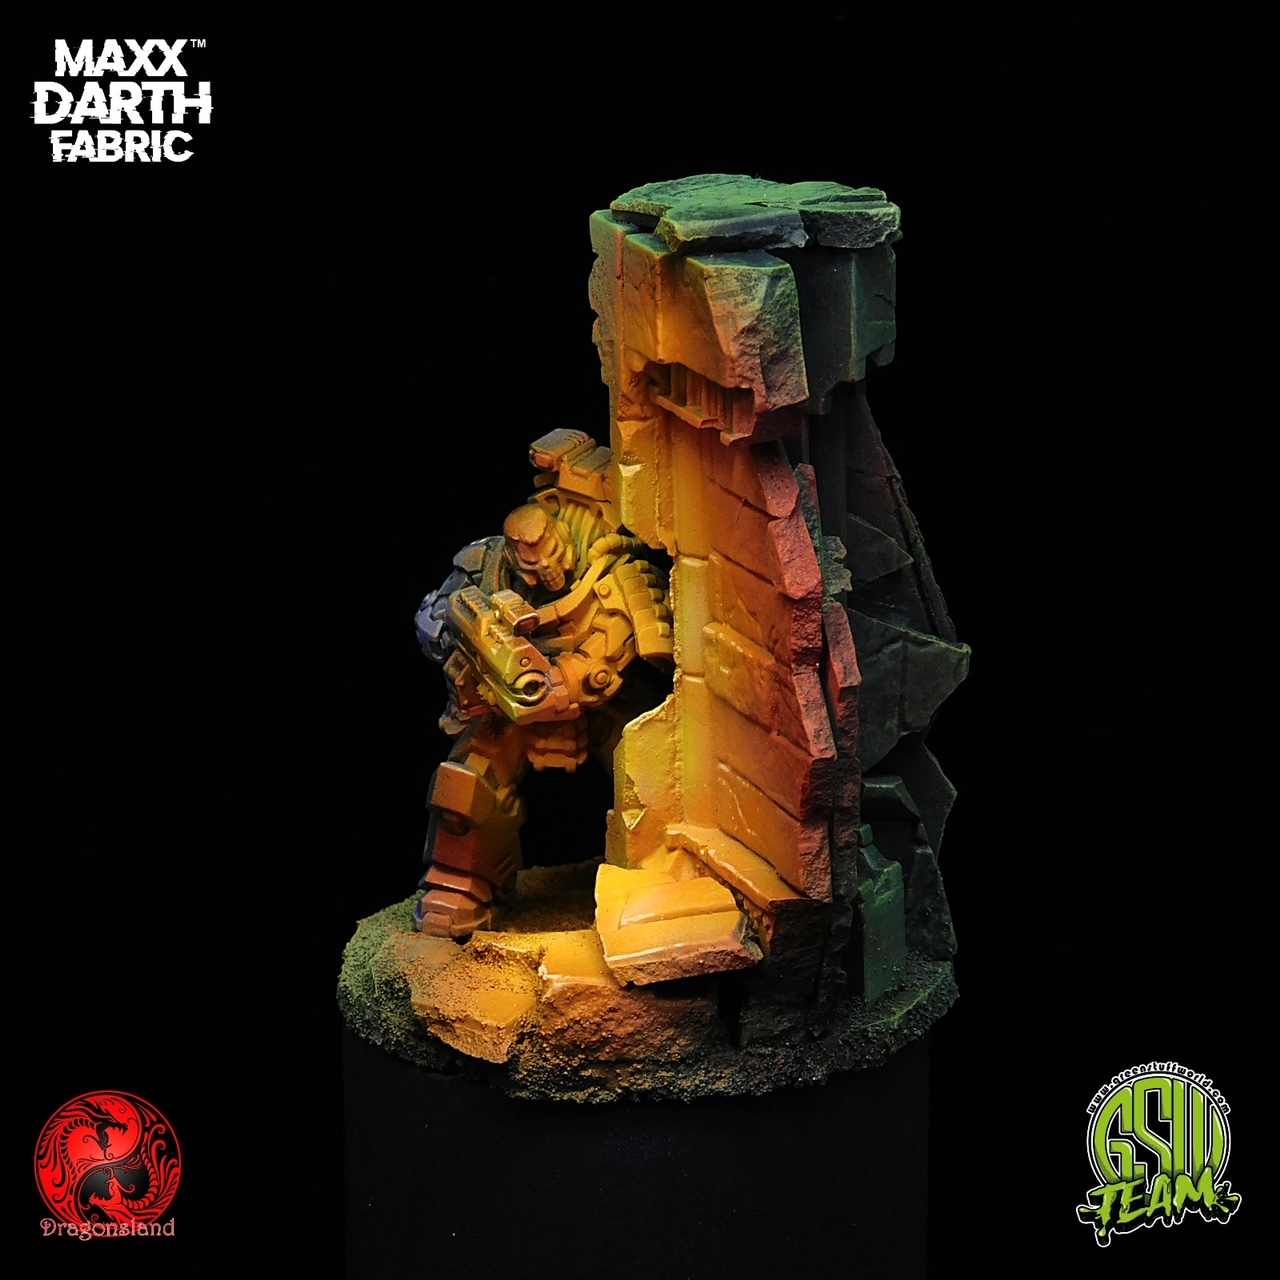 Maxx Darth Black Paint by Green Stuff World — Kickstarter